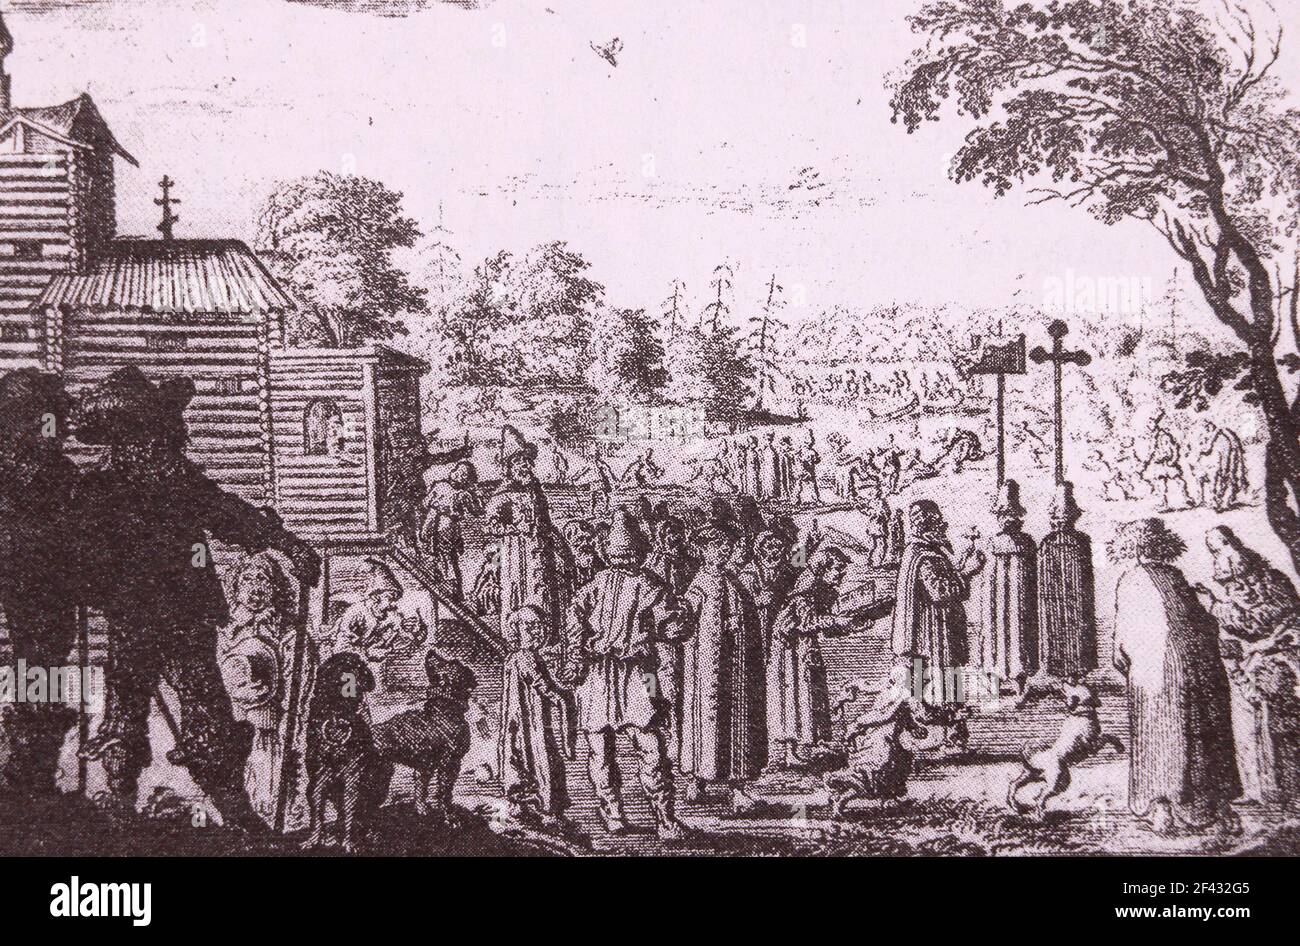 Processione religiosa in Russia. Incisione del 17 ° secolo. Illustrazione della pubblicazione Note sulla Russia di Adam Olearius. Foto Stock